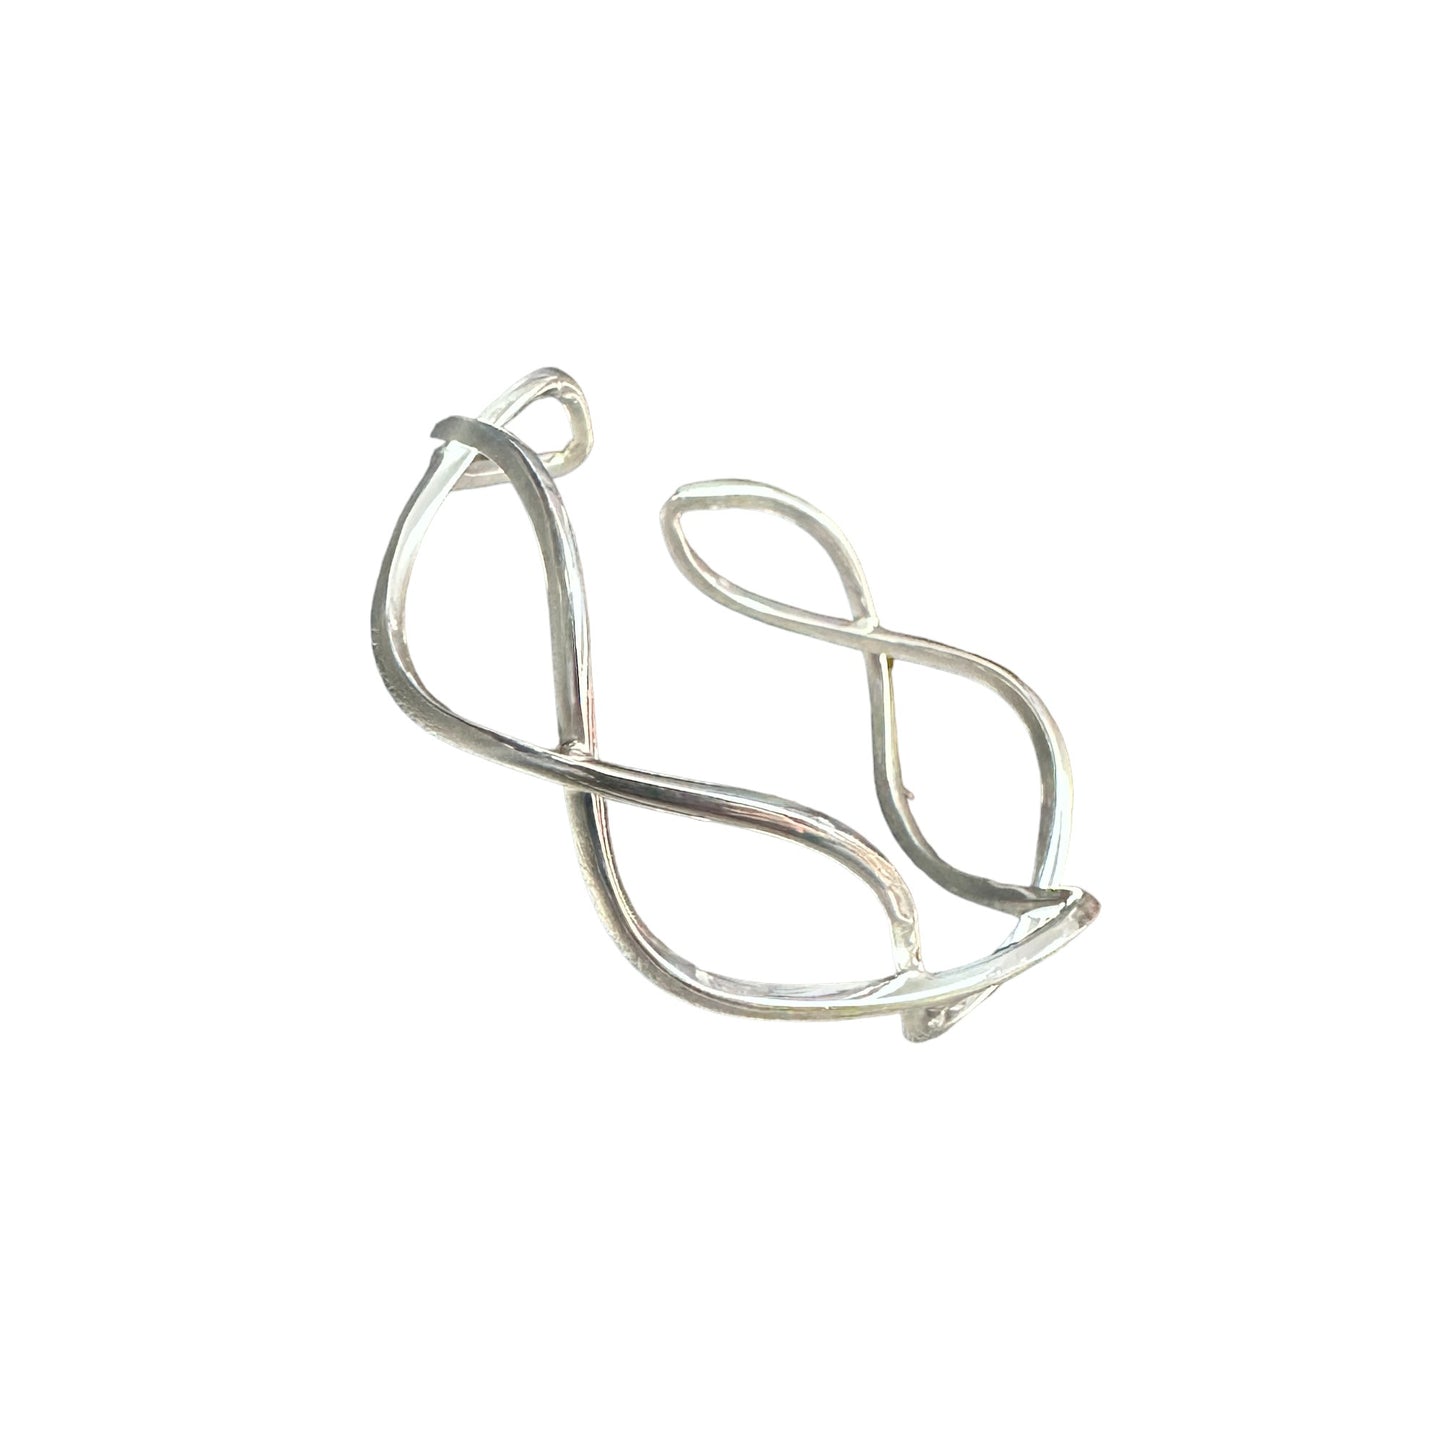 Looped Cuff Bracelet 5/8" Wide Sterling Silver